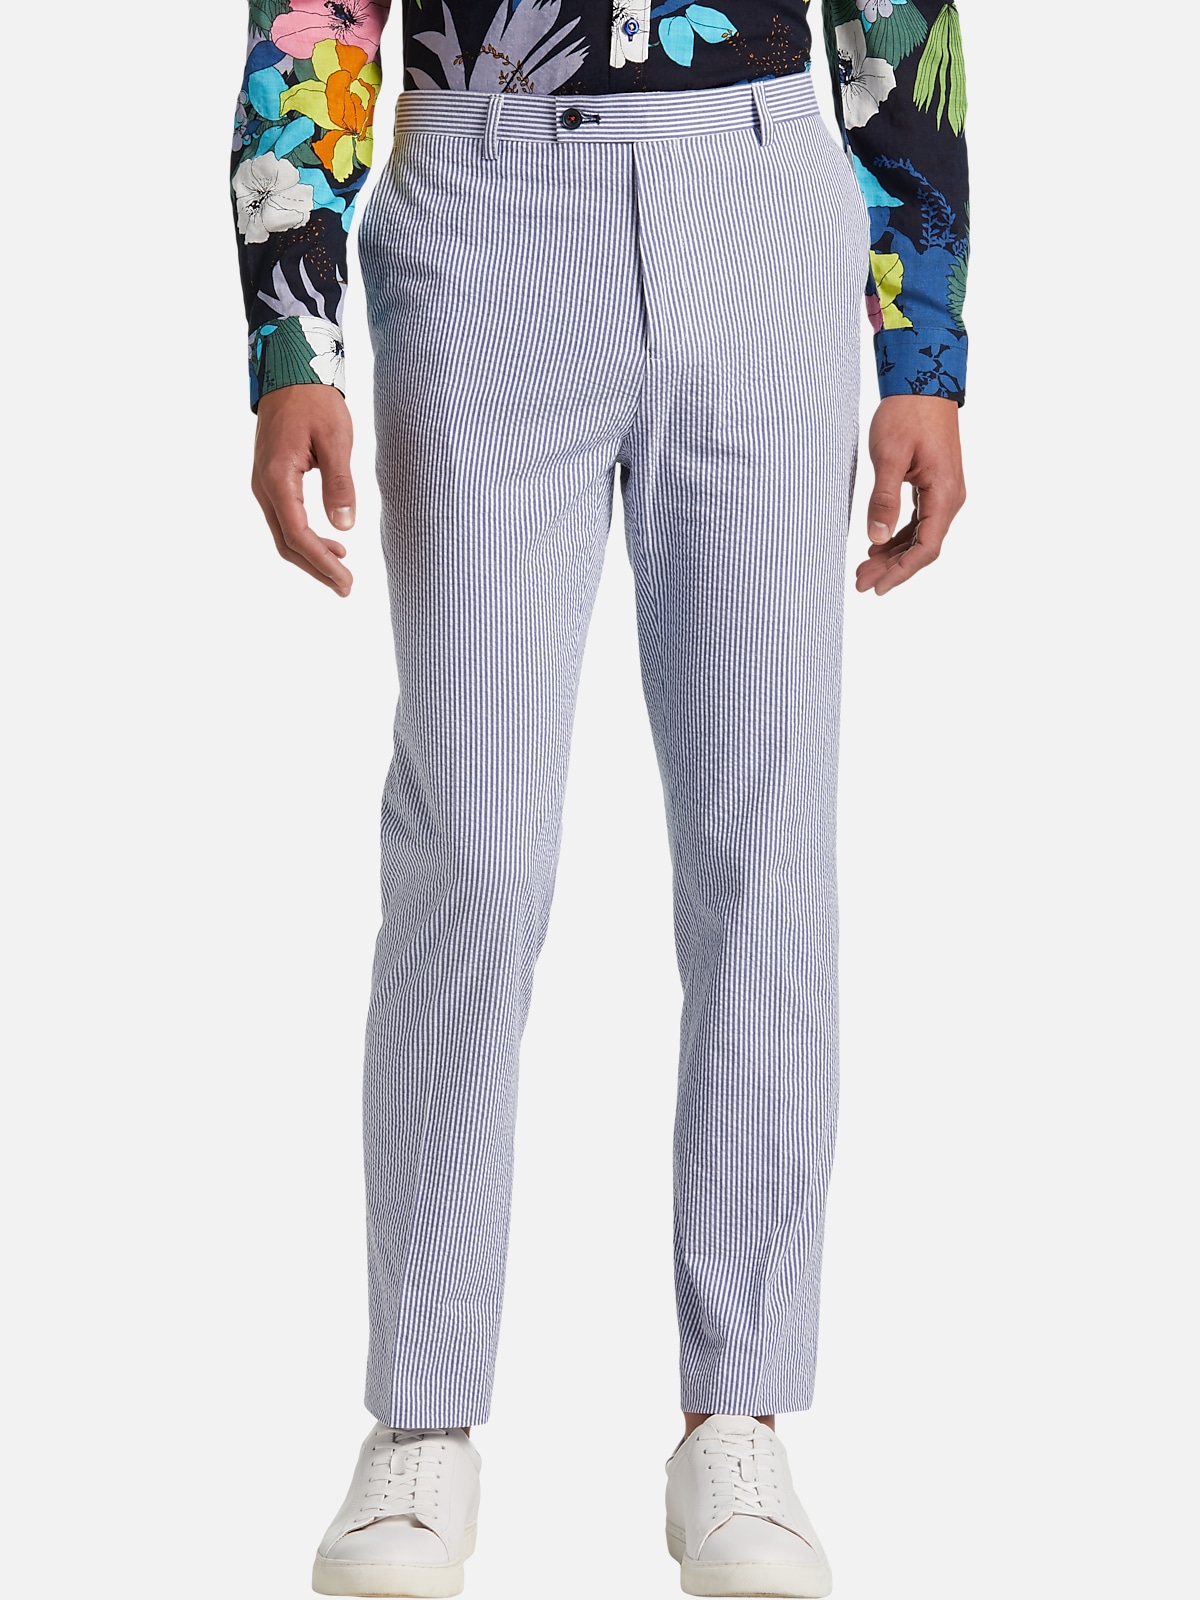 Paisley & Gray Slim Fit Suit Separates Pants | All Sale| Men's Wearhouse